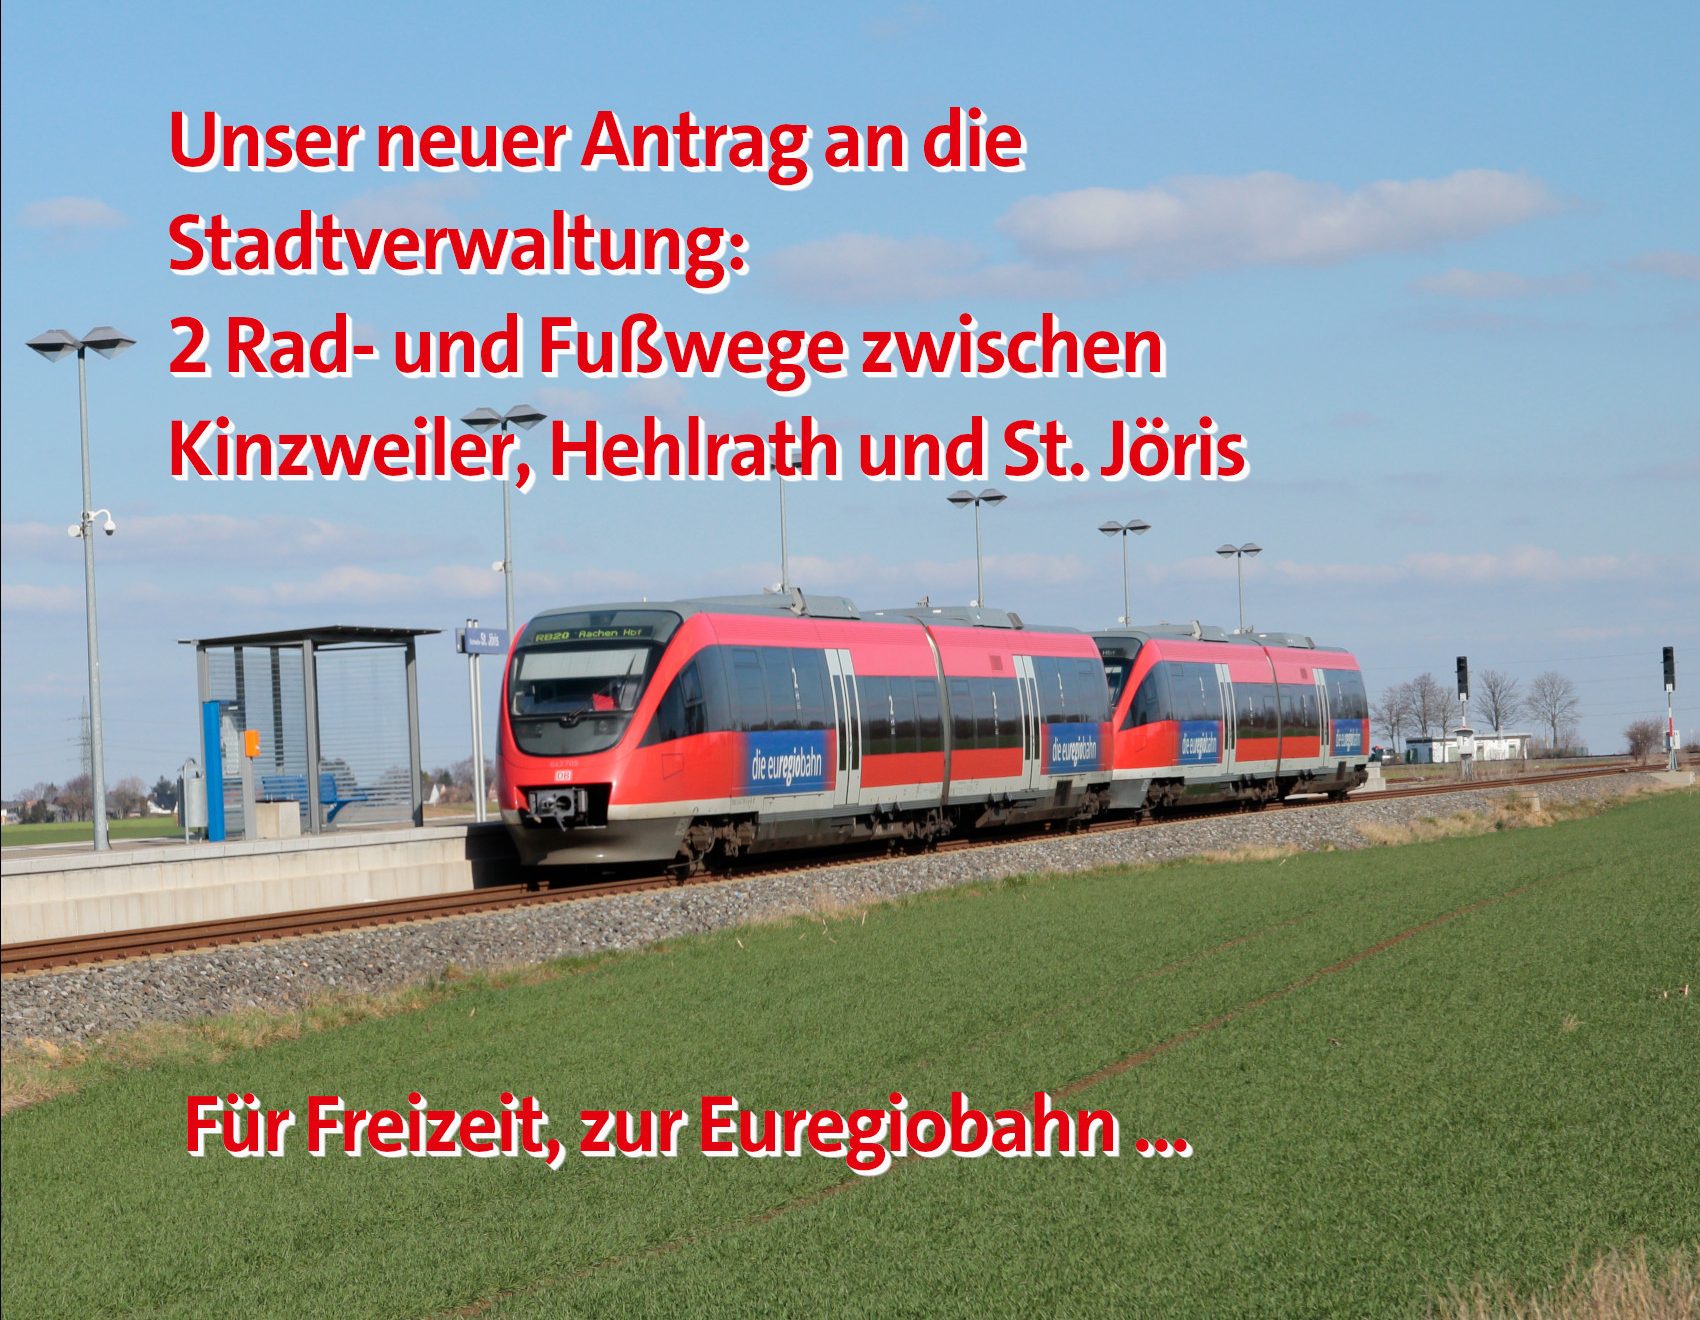 Radweg Euregiobahn Kinzweiler Hehlrath St. Joeris